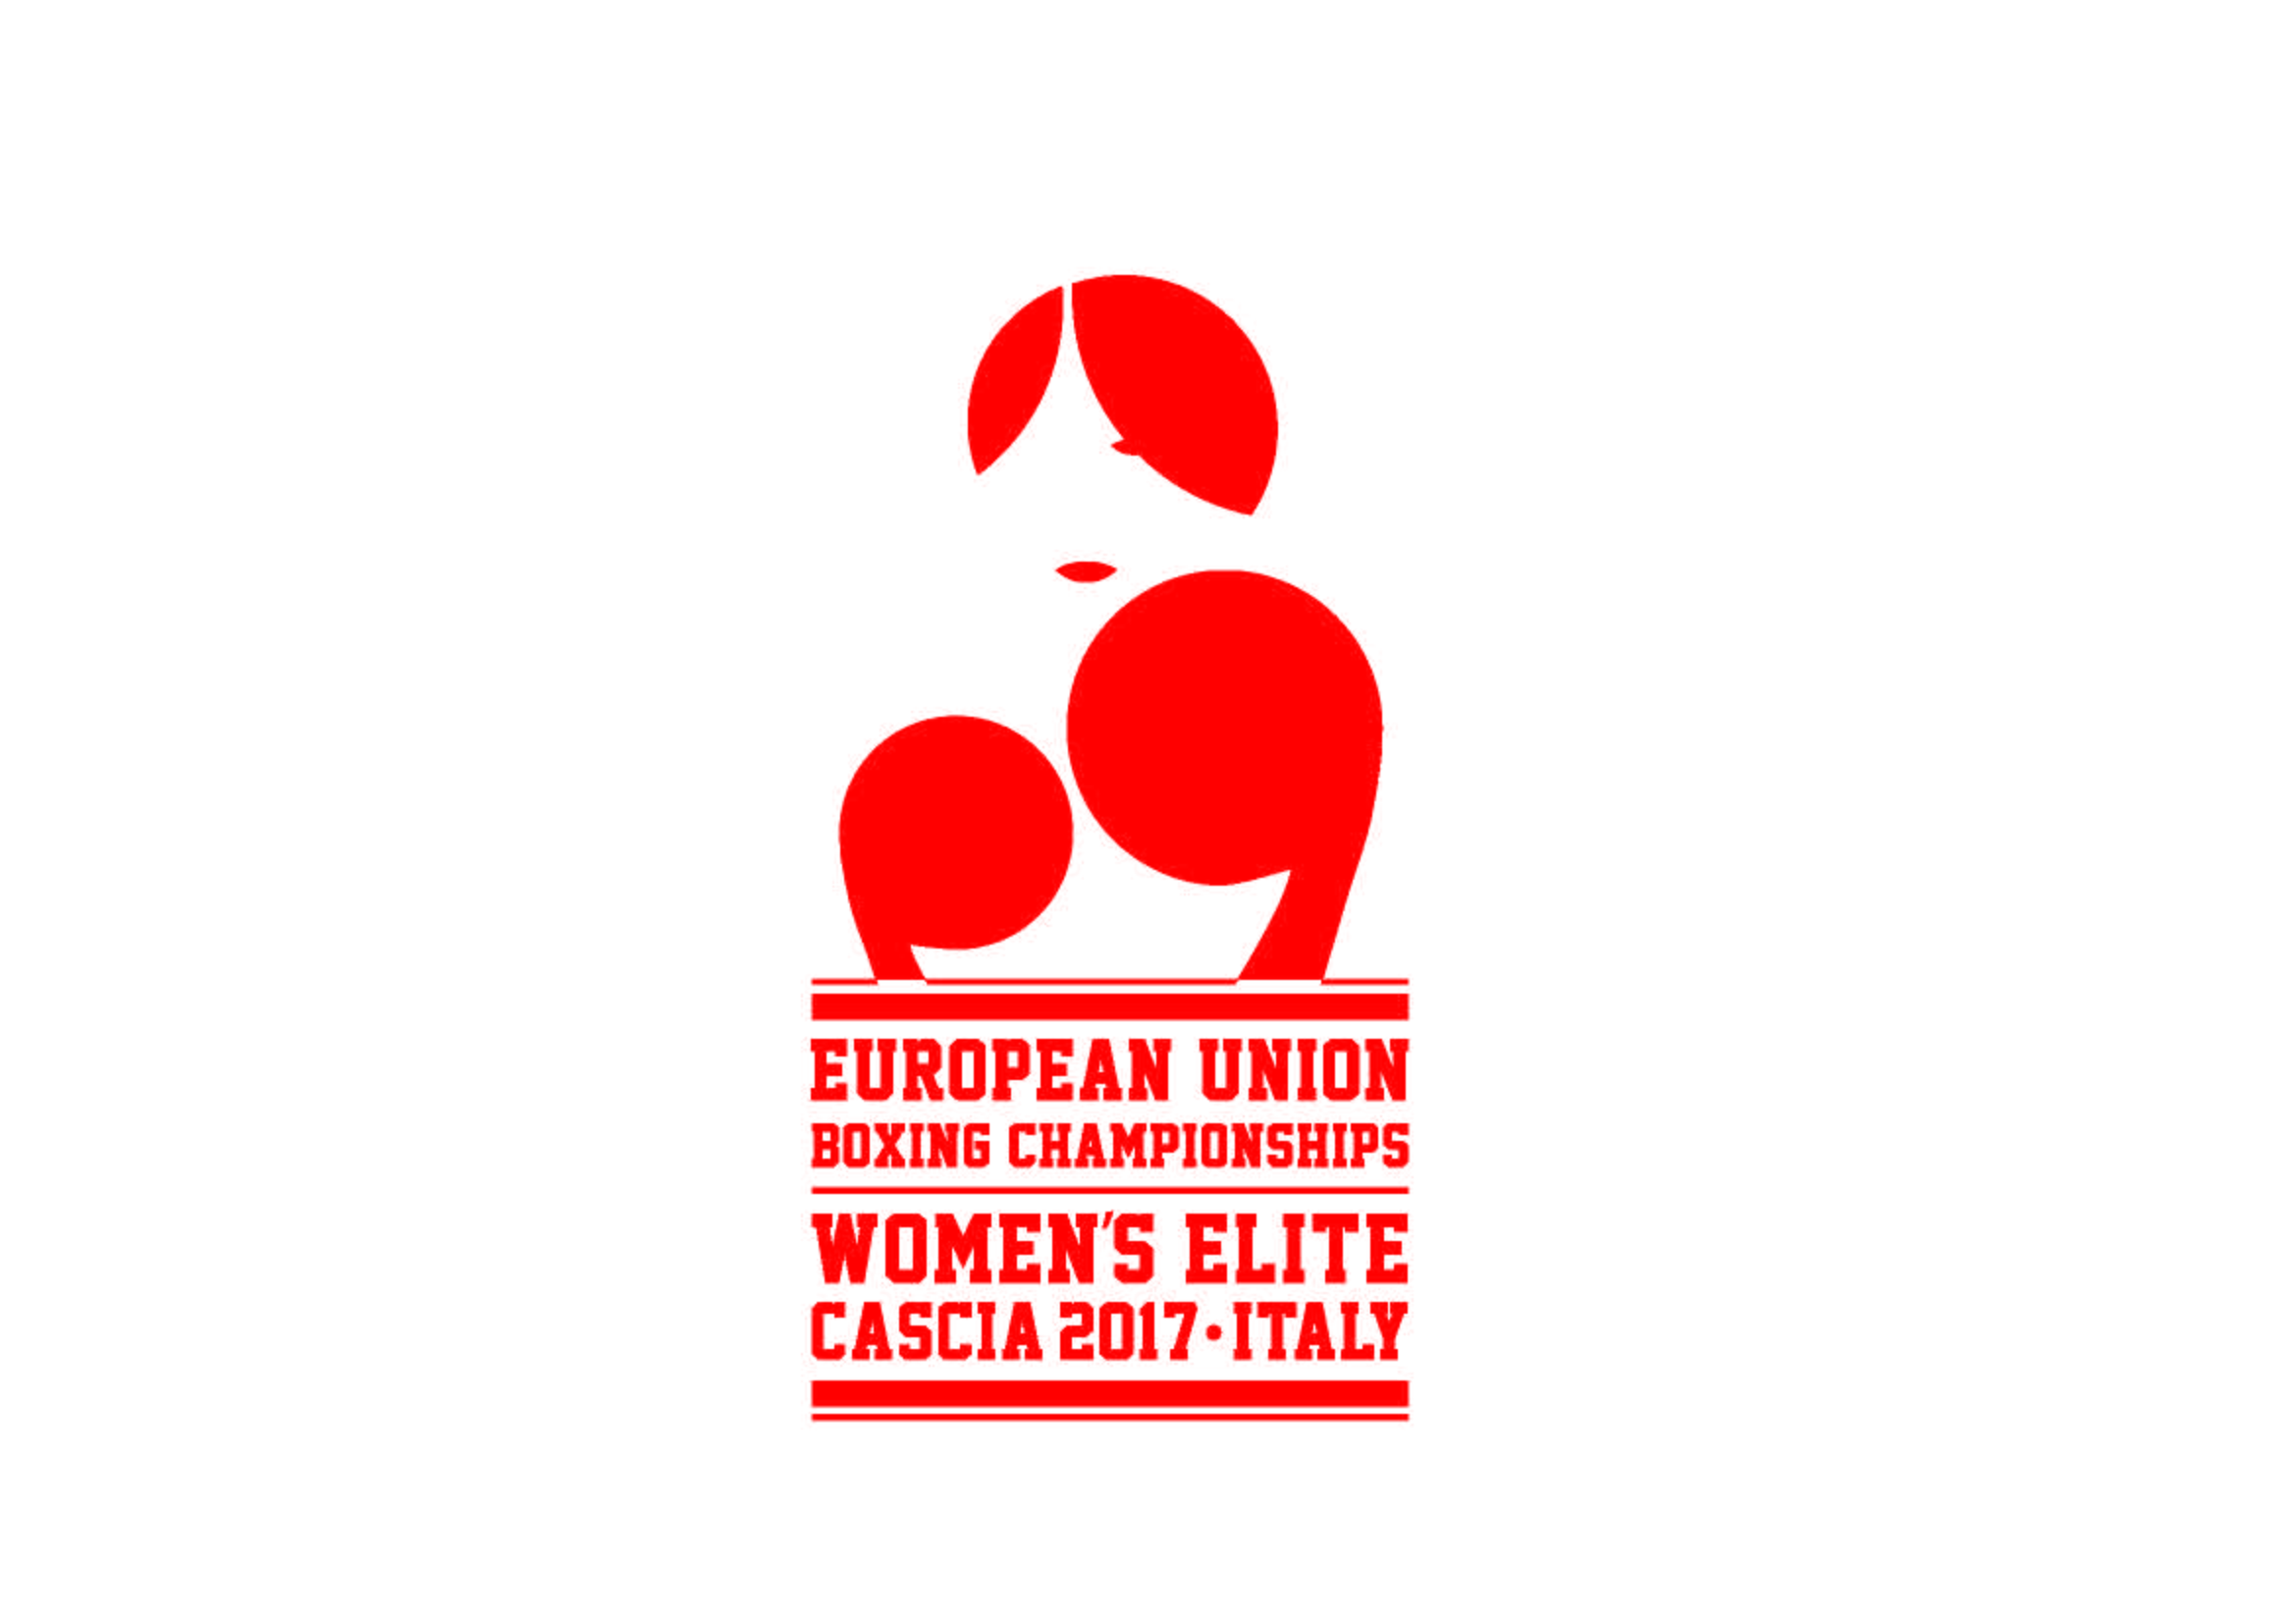 Campionati Unione Europea Elite Femminili Cascia 2017 - Ecco il Logo Ufficiale #BoxeUE2017